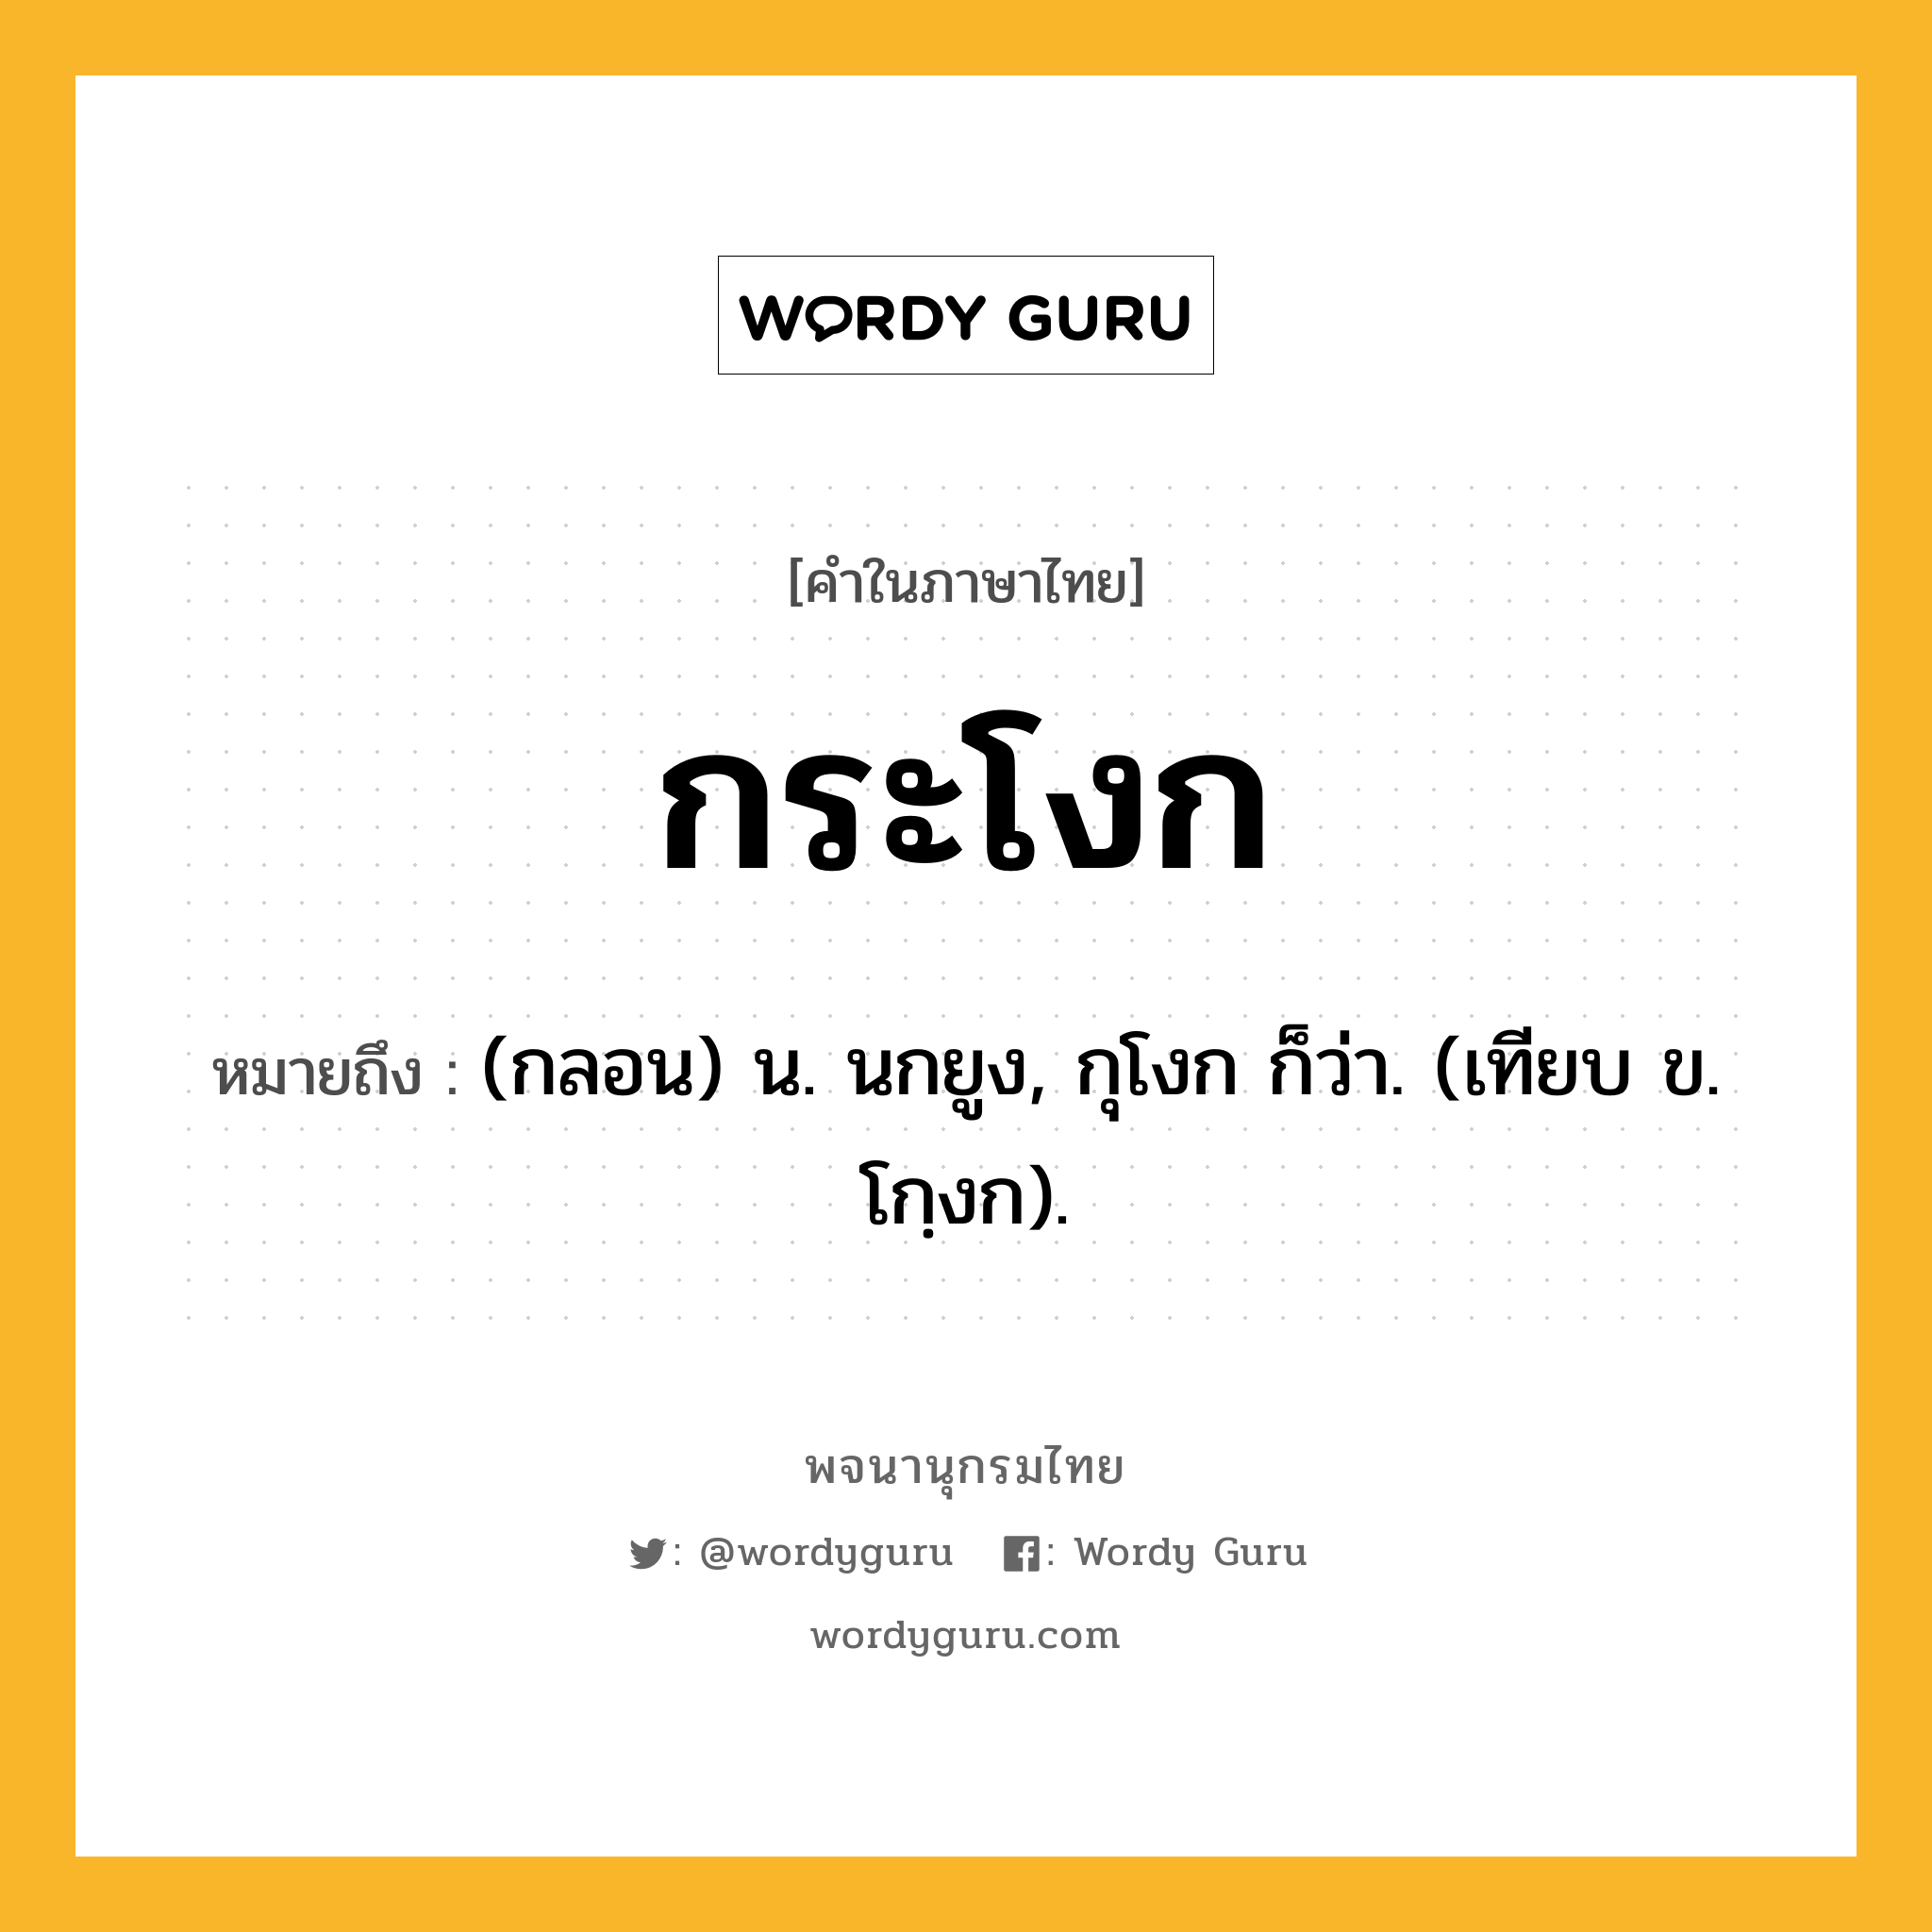 กระโงก หมายถึงอะไร?, คำในภาษาไทย กระโงก หมายถึง (กลอน) น. นกยูง, กุโงก ก็ว่า. (เทียบ ข. โกฺงก).